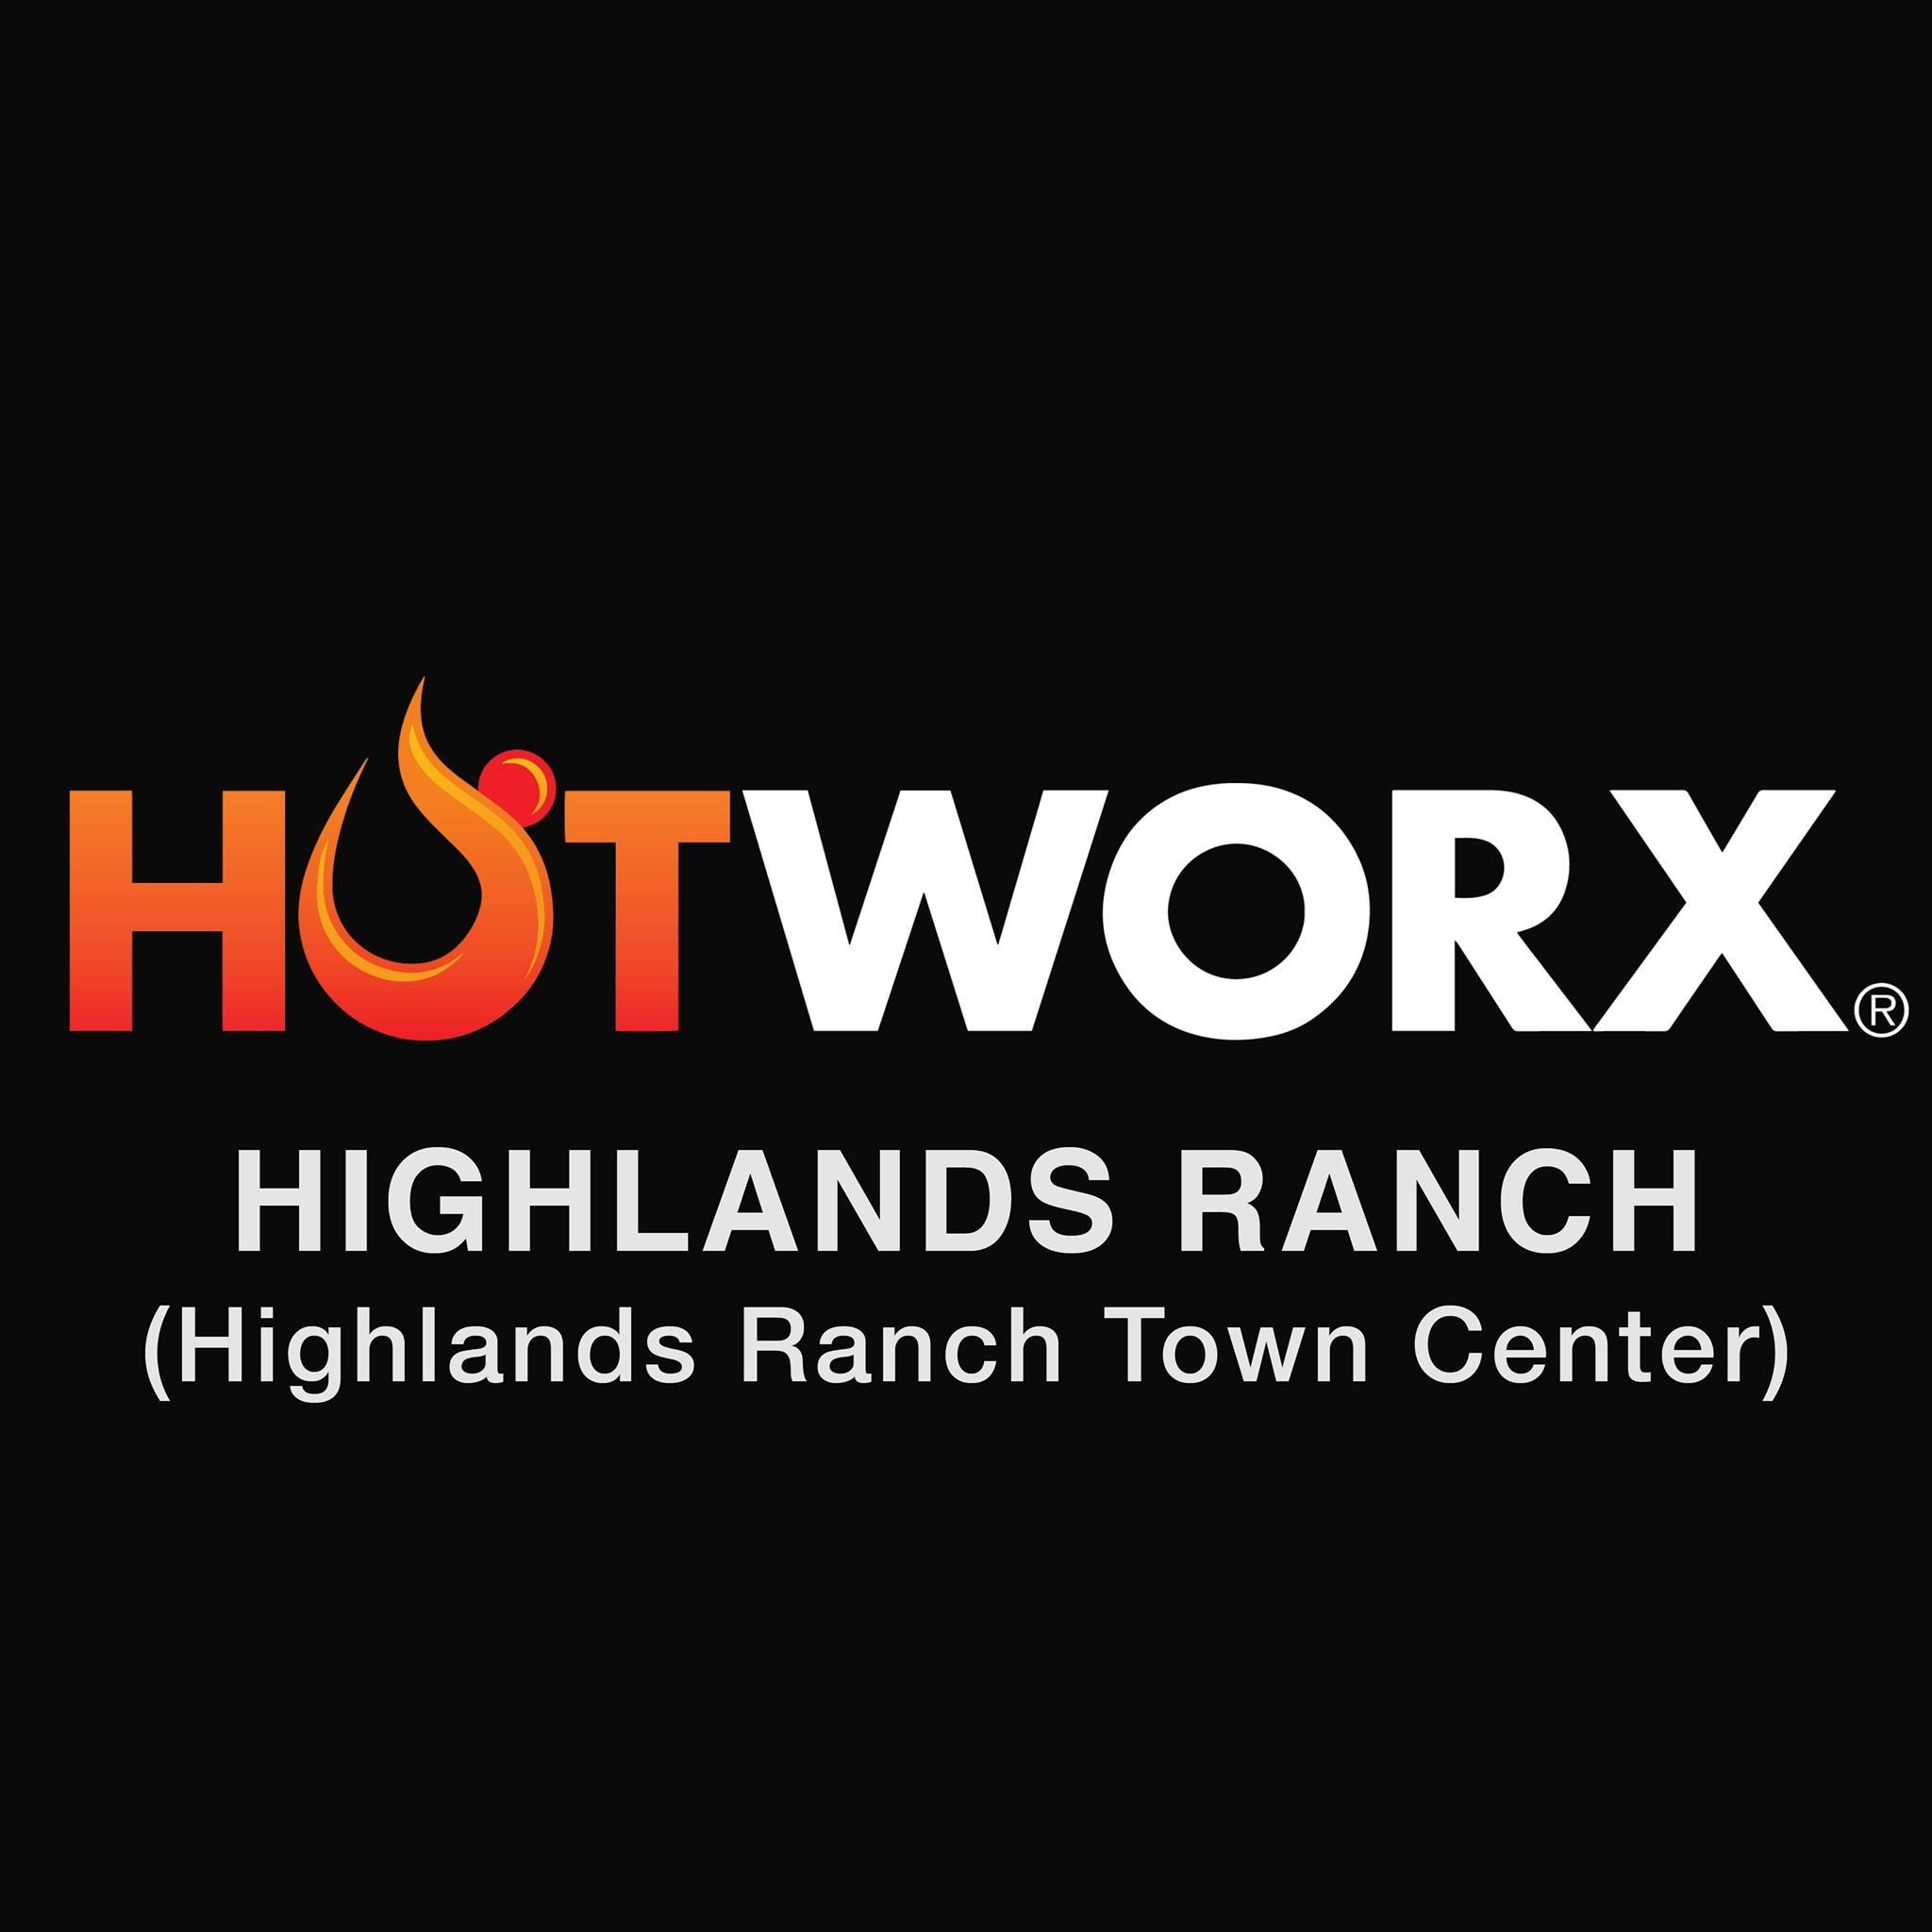 HOTWORX - Highlands Ranch, CO (Highlands Ranch Town Center)'s Logo